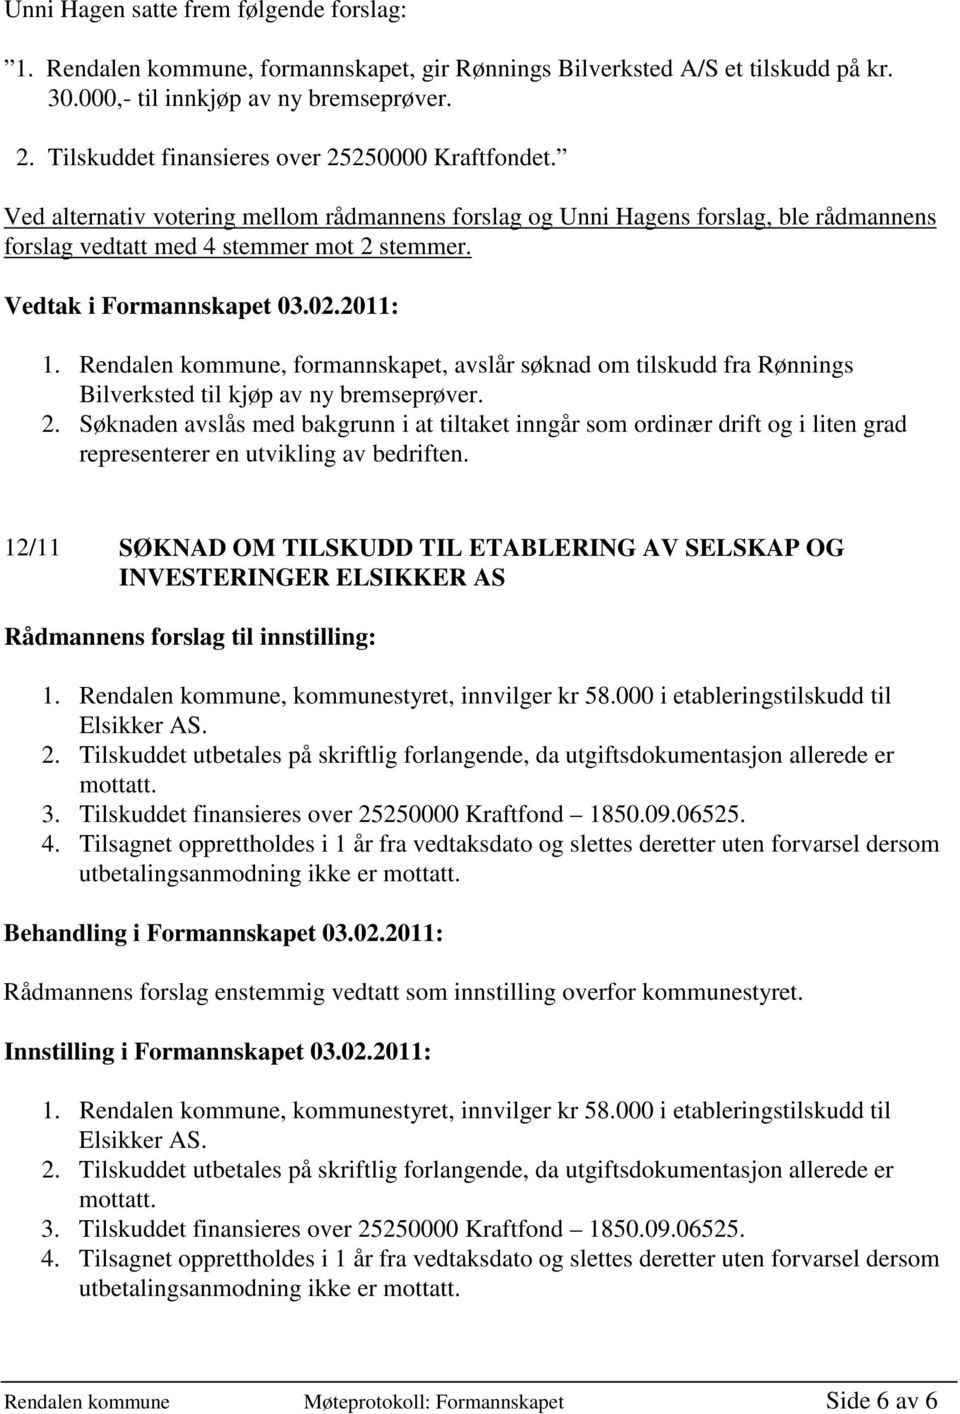 Rendalen kommune, formannskapet, avslår søknad om tilskudd fra Rønnings Bilverksted til kjøp av ny bremseprøver. 2.